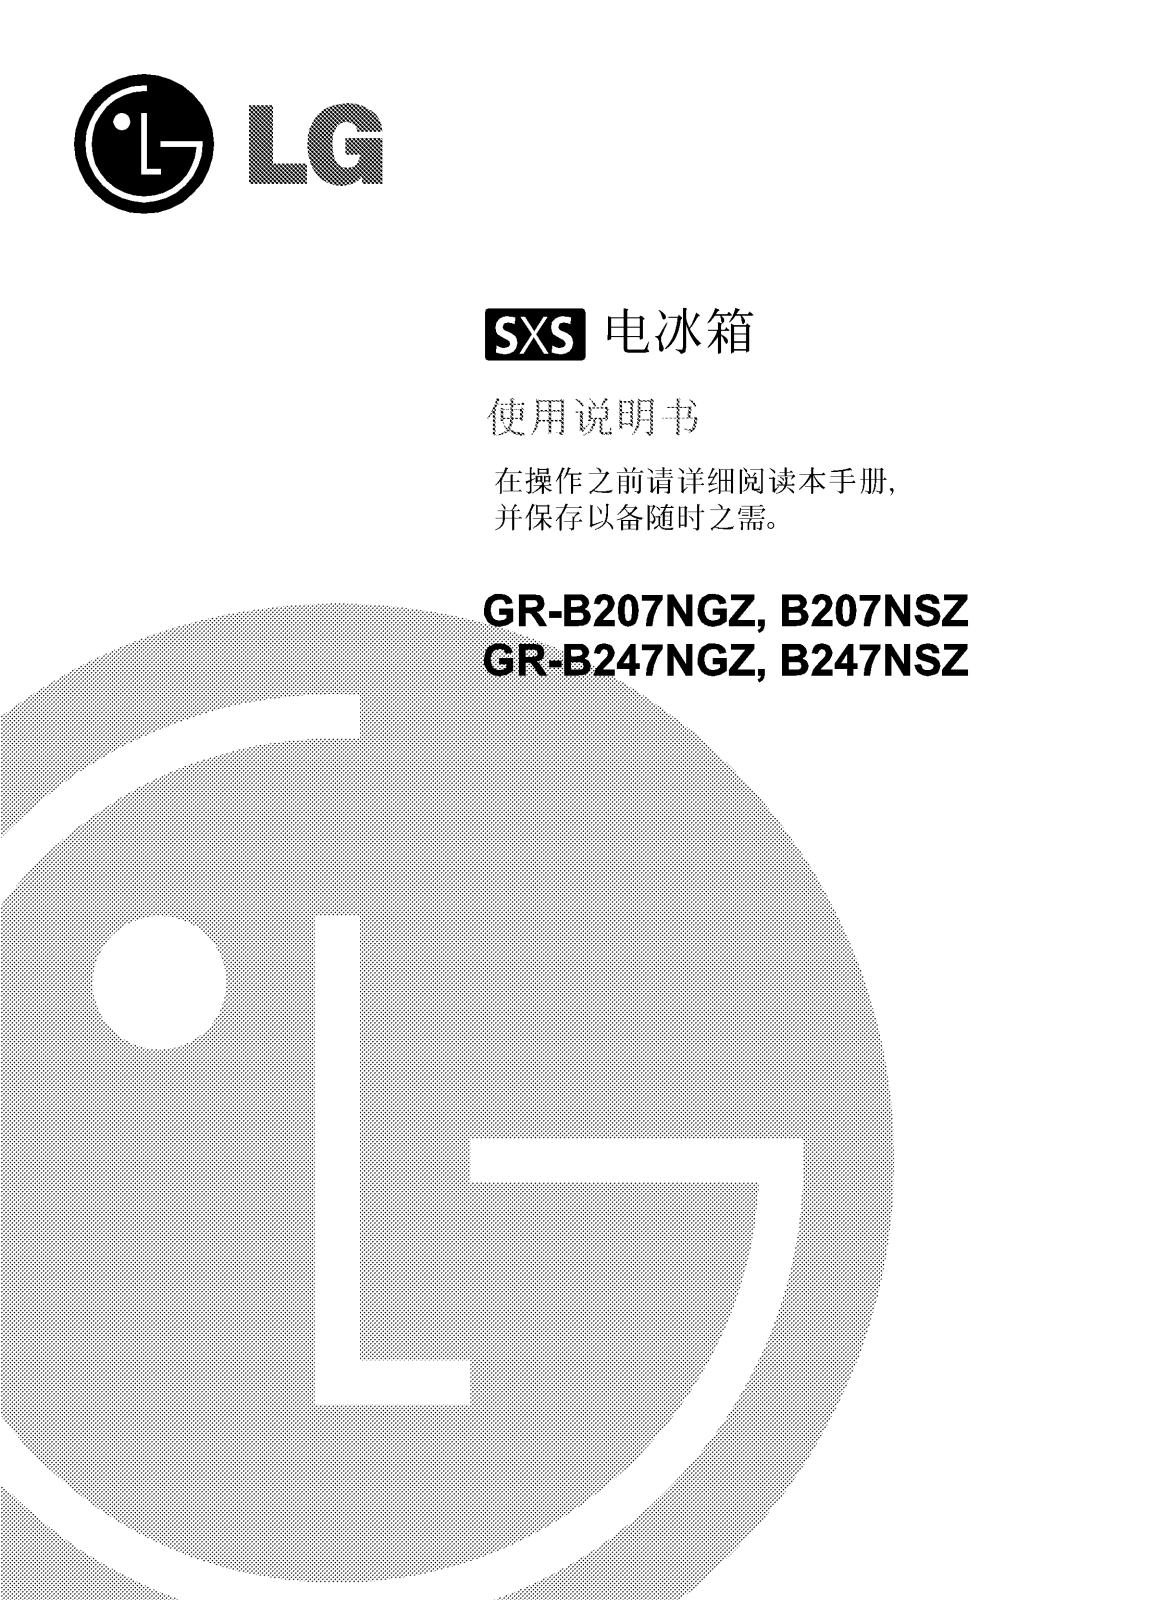 Lg GR-B207NGZ, GR-B247NGZ, B207NGZ, B247NGZ User Manual